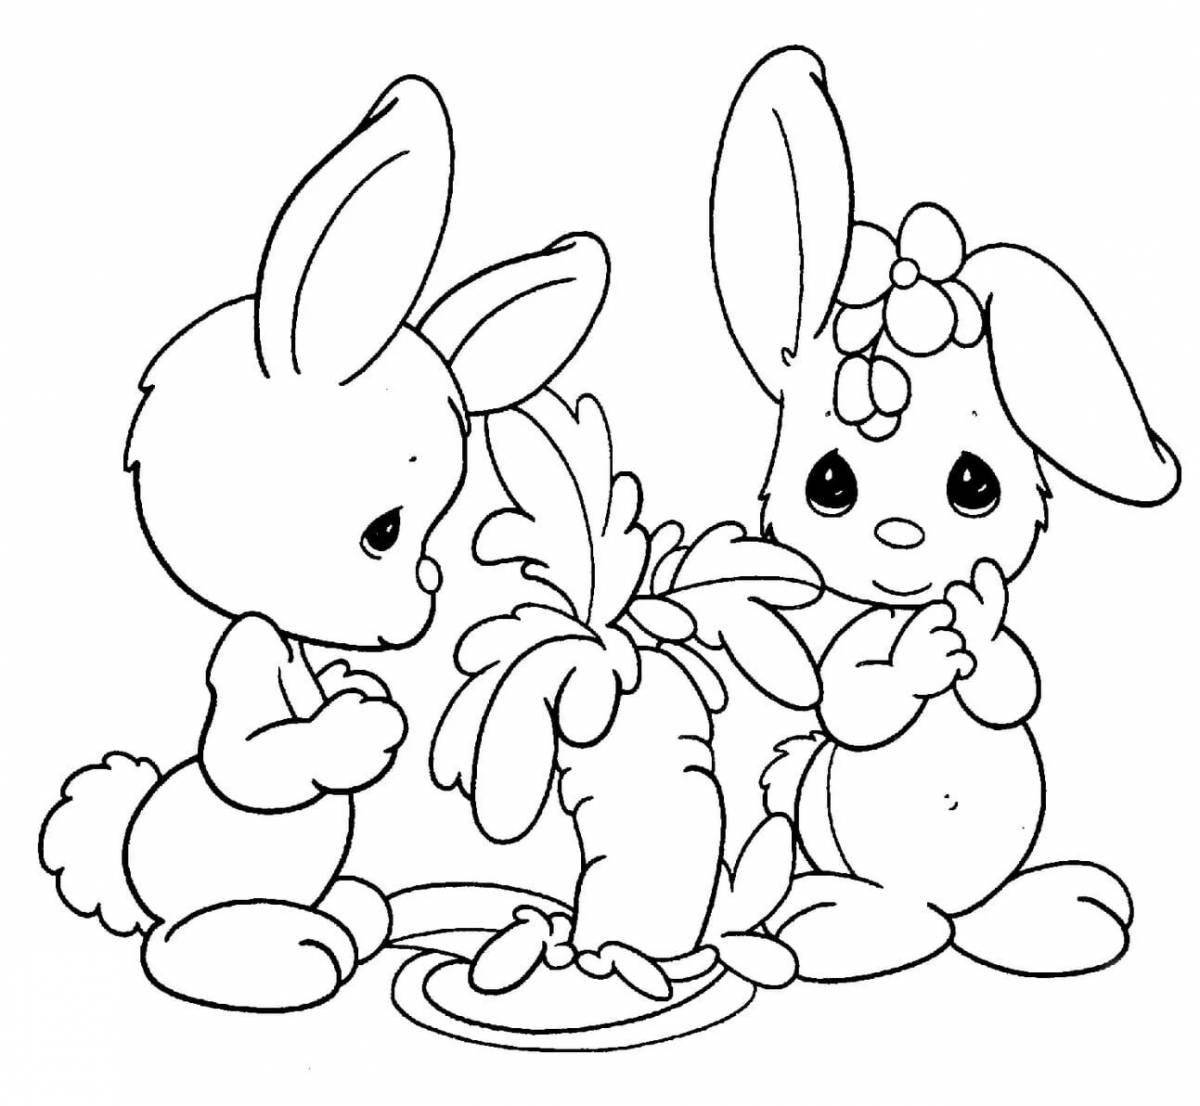 Причудливая раскраска кролик для детей